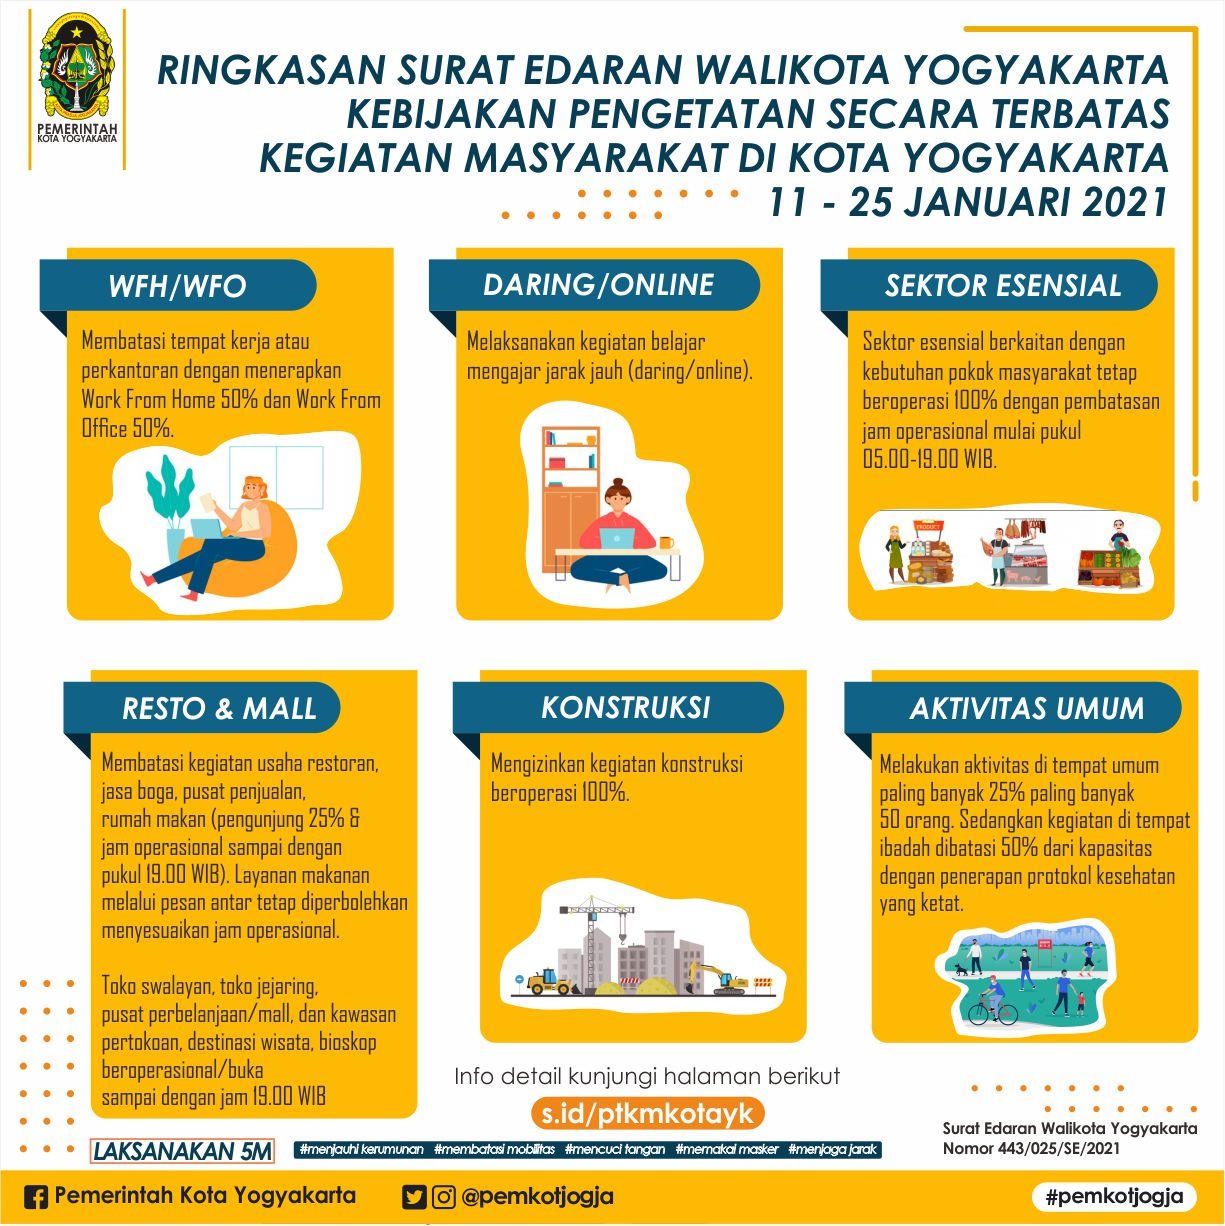 Ringkasan Surat Edaran Walikota Yogyakarta Kebijakan Pengetatan Secara Terbatas Kegiatan Masyarakat Kota Yogyakarta, pada 11-25Januari 2021